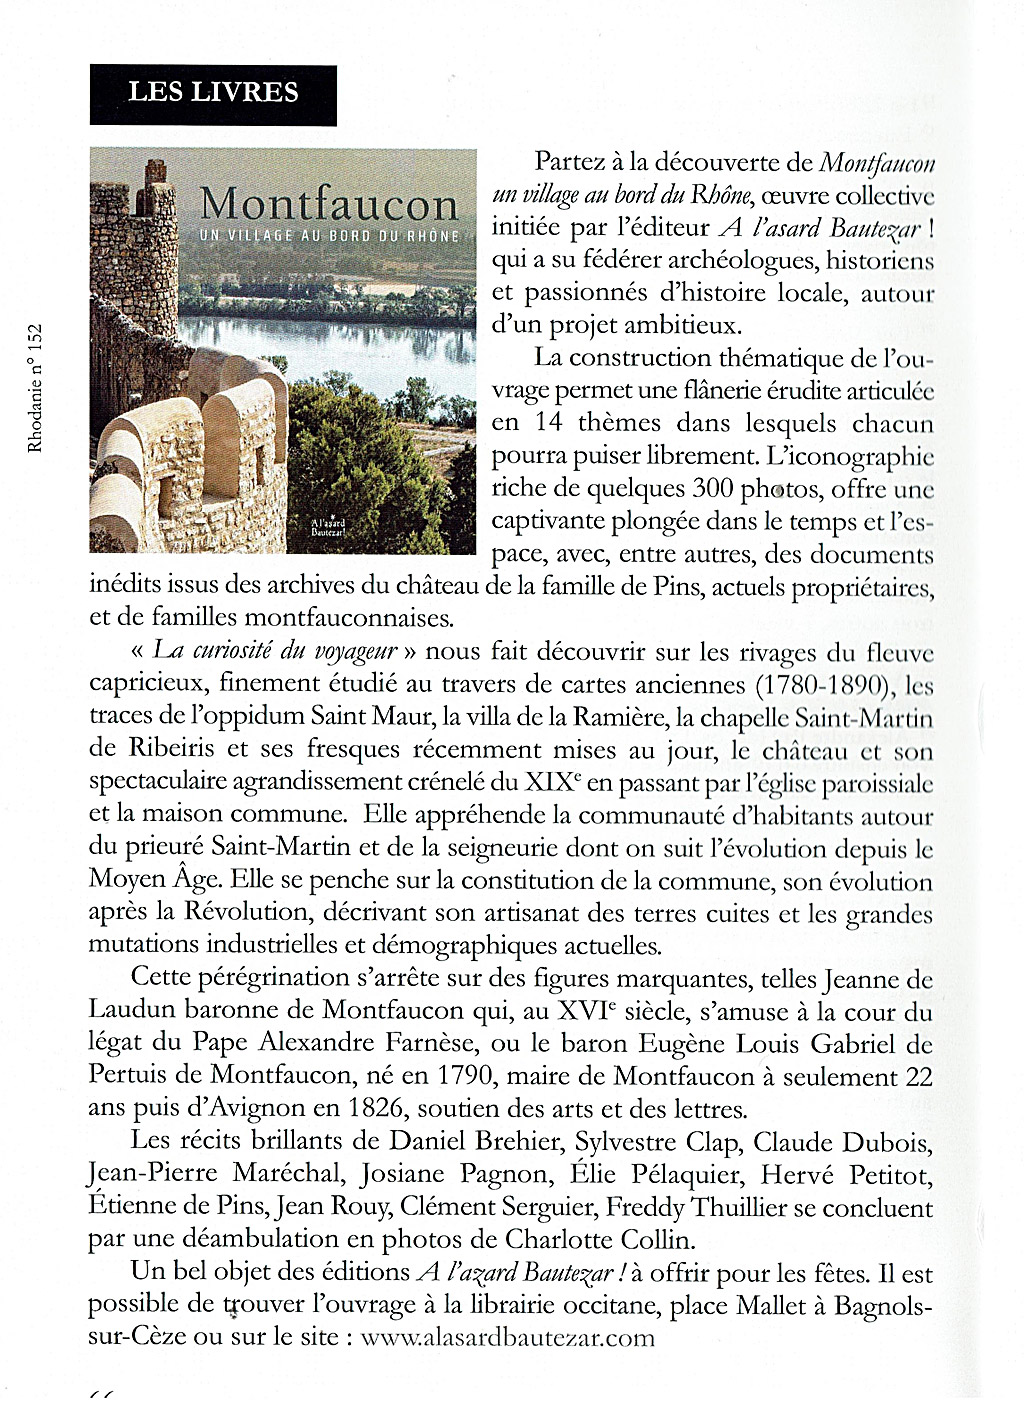 Article paru lors de la sortie de l'ouvrage Montfaucon un village au bord du Rhône